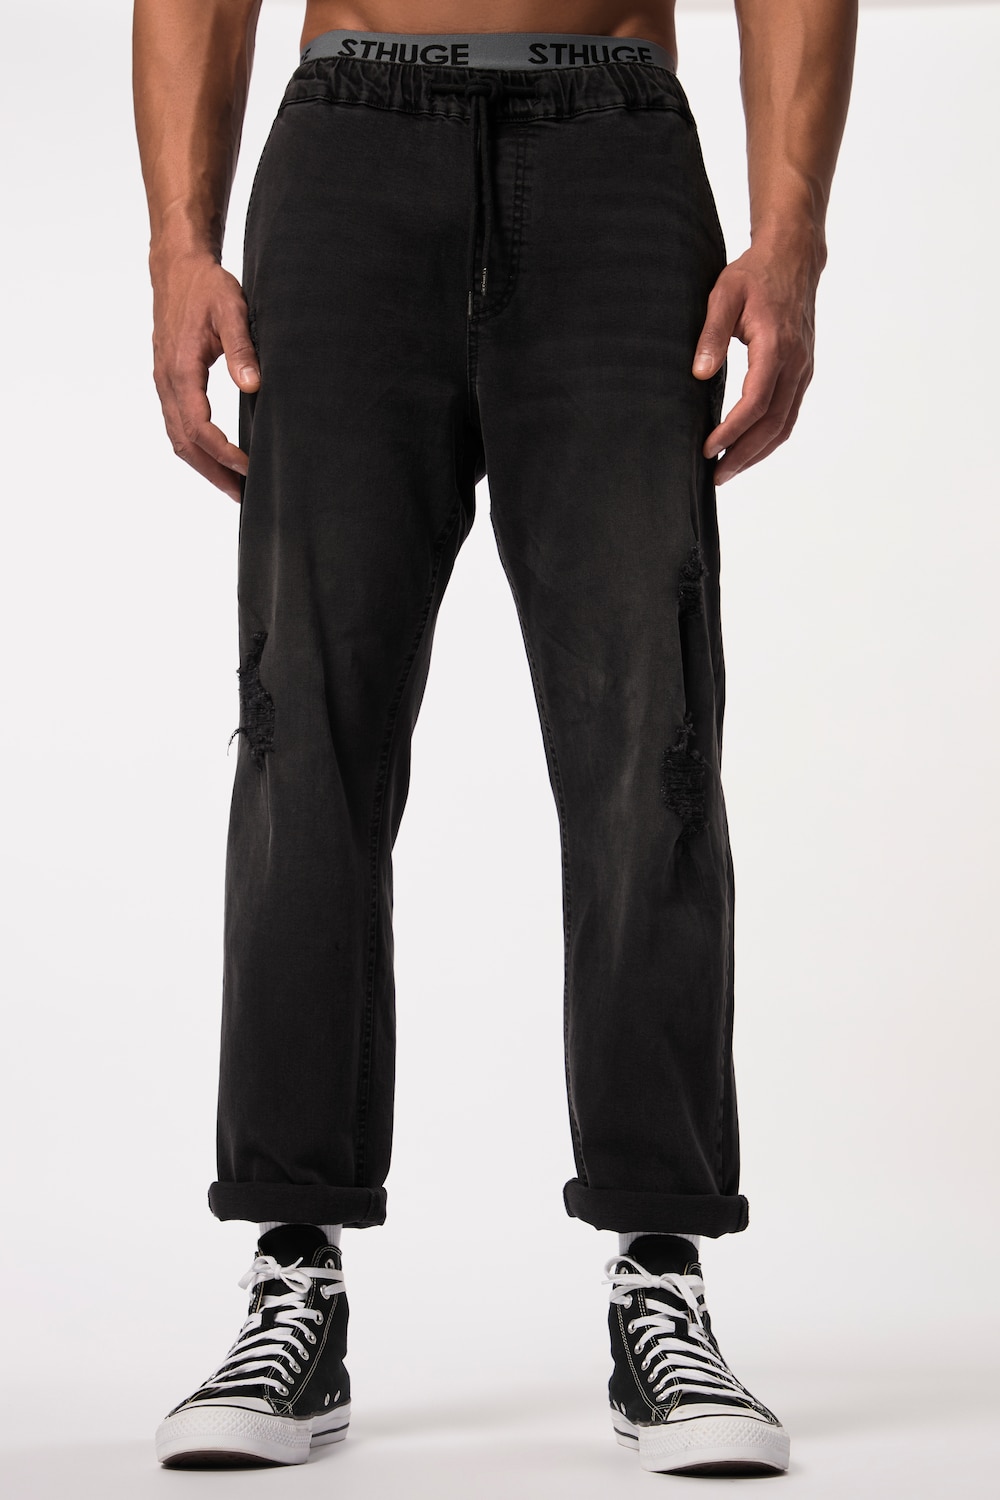 Grote Maten STHUGE jeans FLEXLASTIC®male, zwart, Maat: 3XL, Katoen, STHUGE